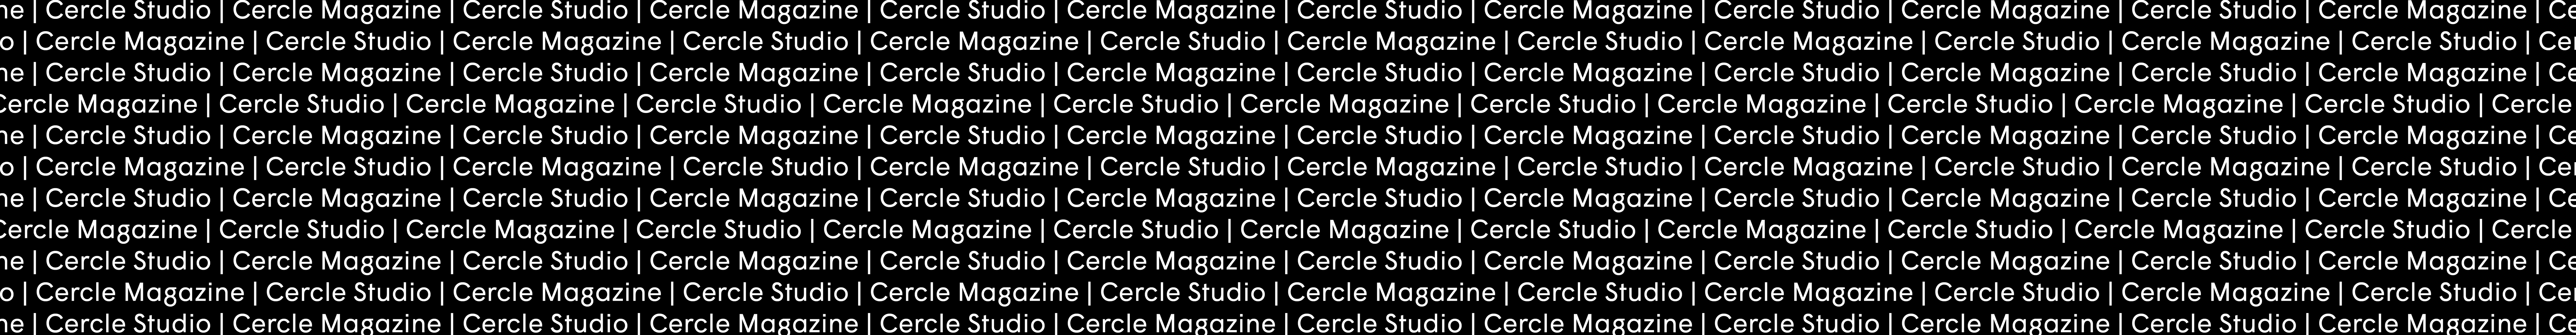 Cercle Studio's profile banner